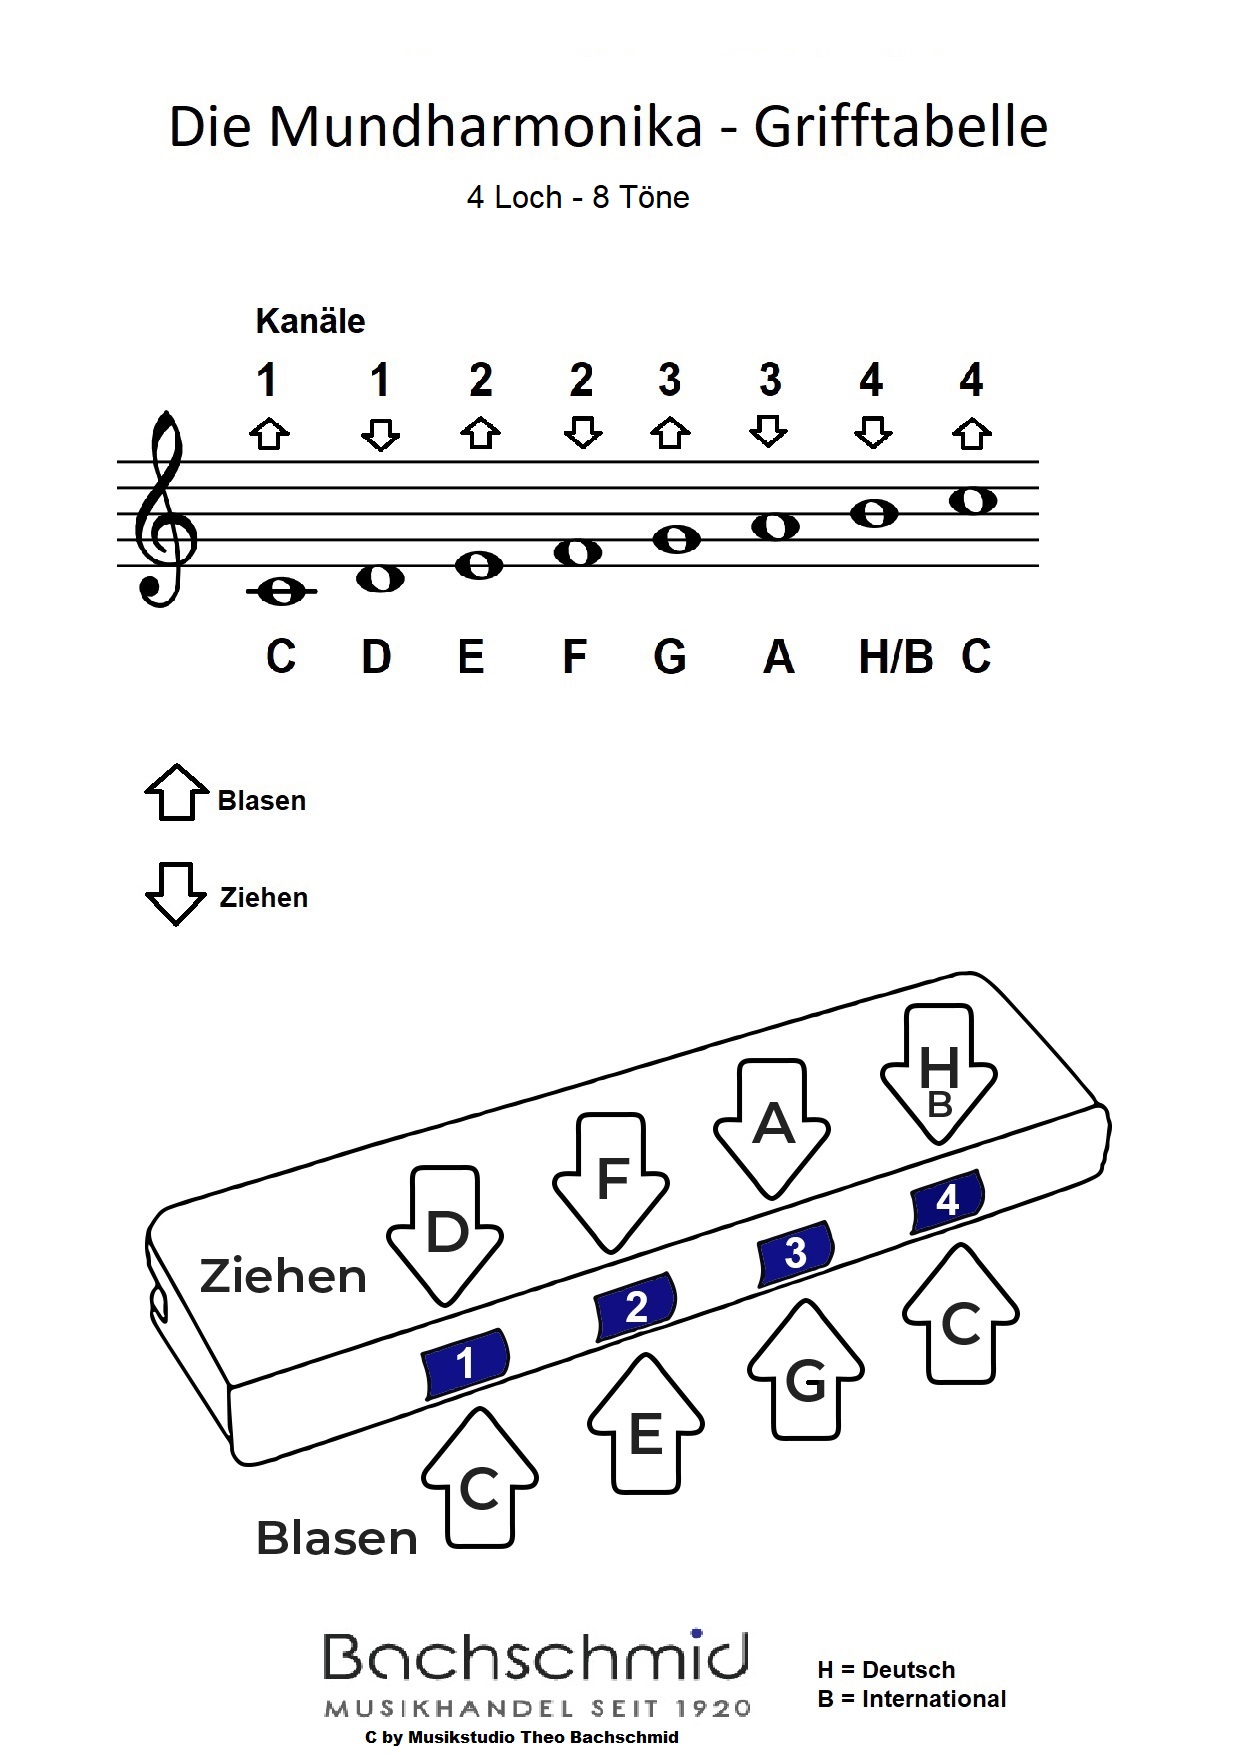  2  Mundharmonikas  (4 Loch 8 Töne)  Ideal für den Anfangsunterricht 1xRot und 1xBlau